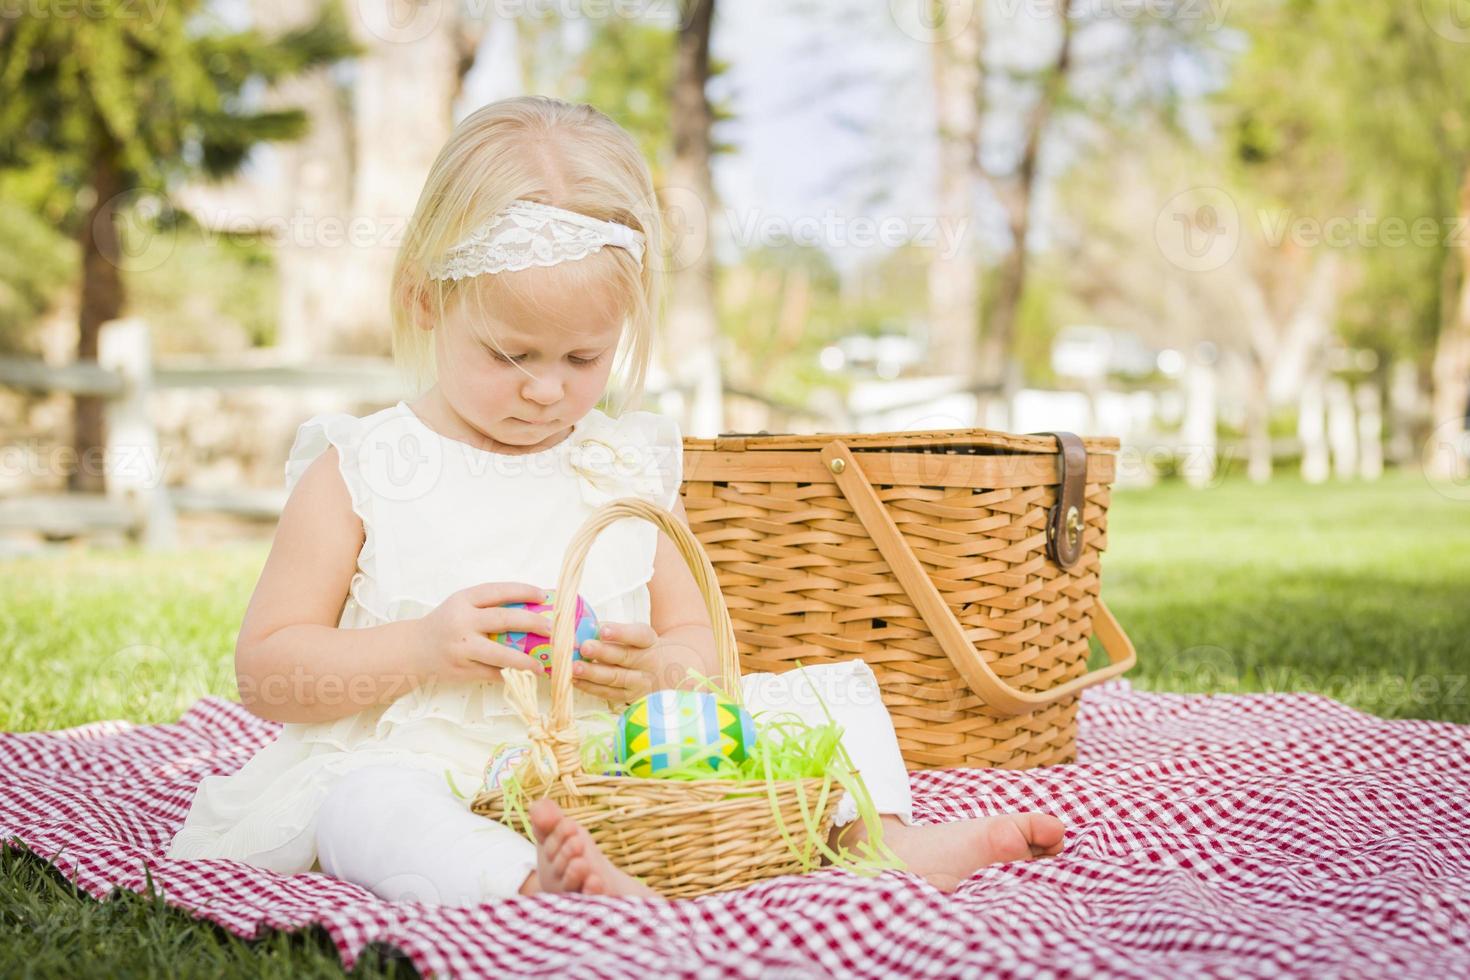 Cute Baby Girl Enjoying Her Easter Eggs on Picnic Blanket photo